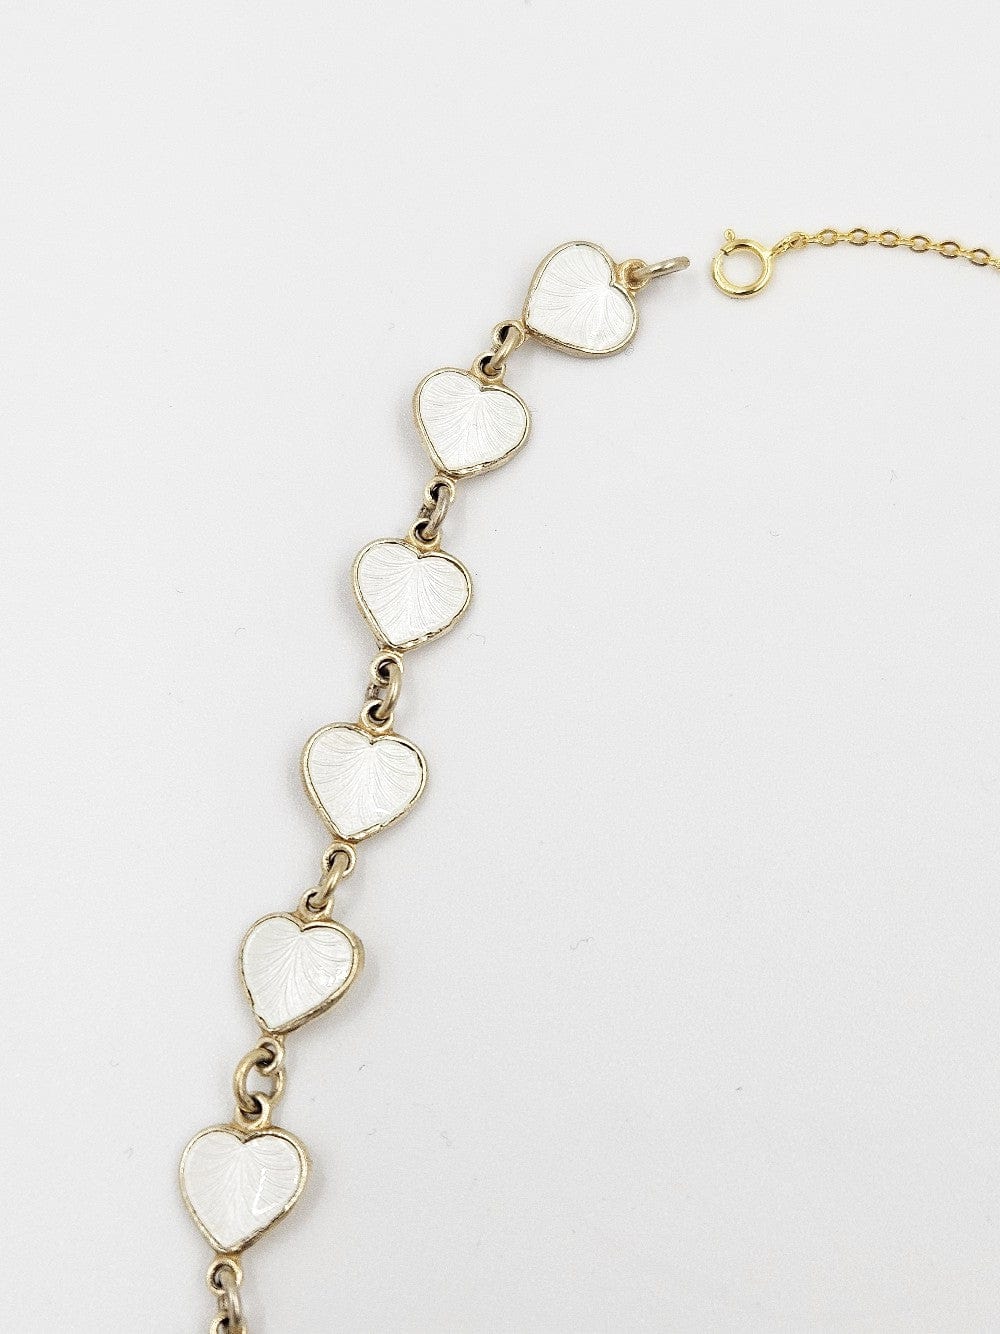 Volmer Bahner Jewelry Danish Designer Volmer Bahner Sterling & Enamel Hearts Necklace 1950s